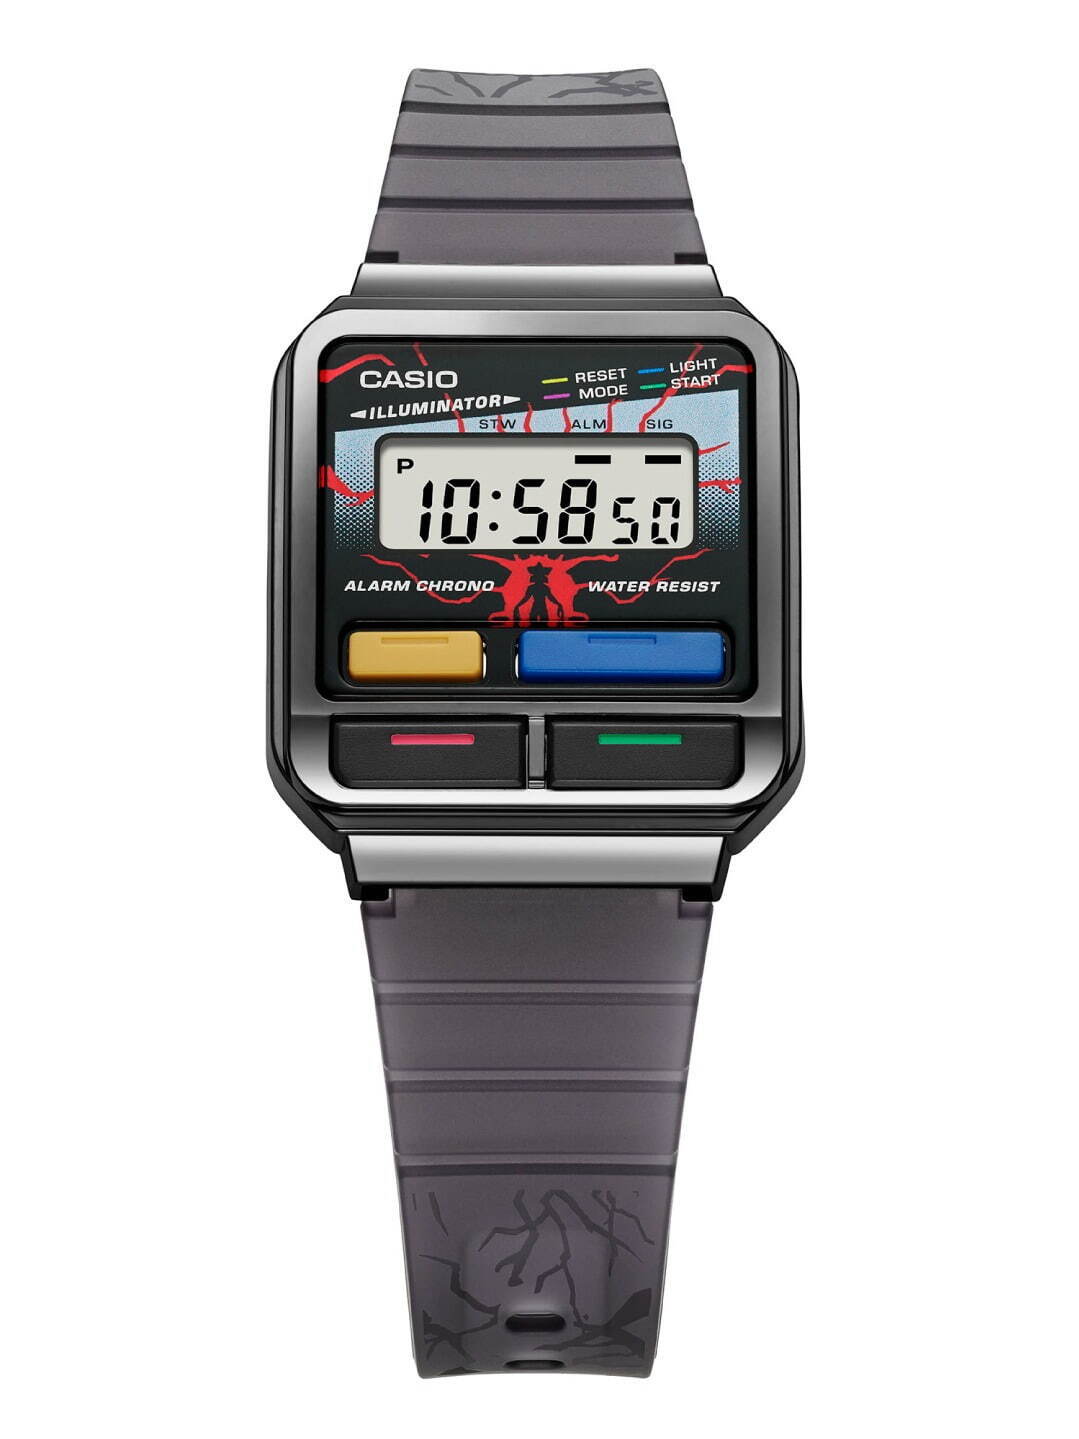 カシオ×ストレンジャー・シングスのコラボ腕時計、レトロな80年代風